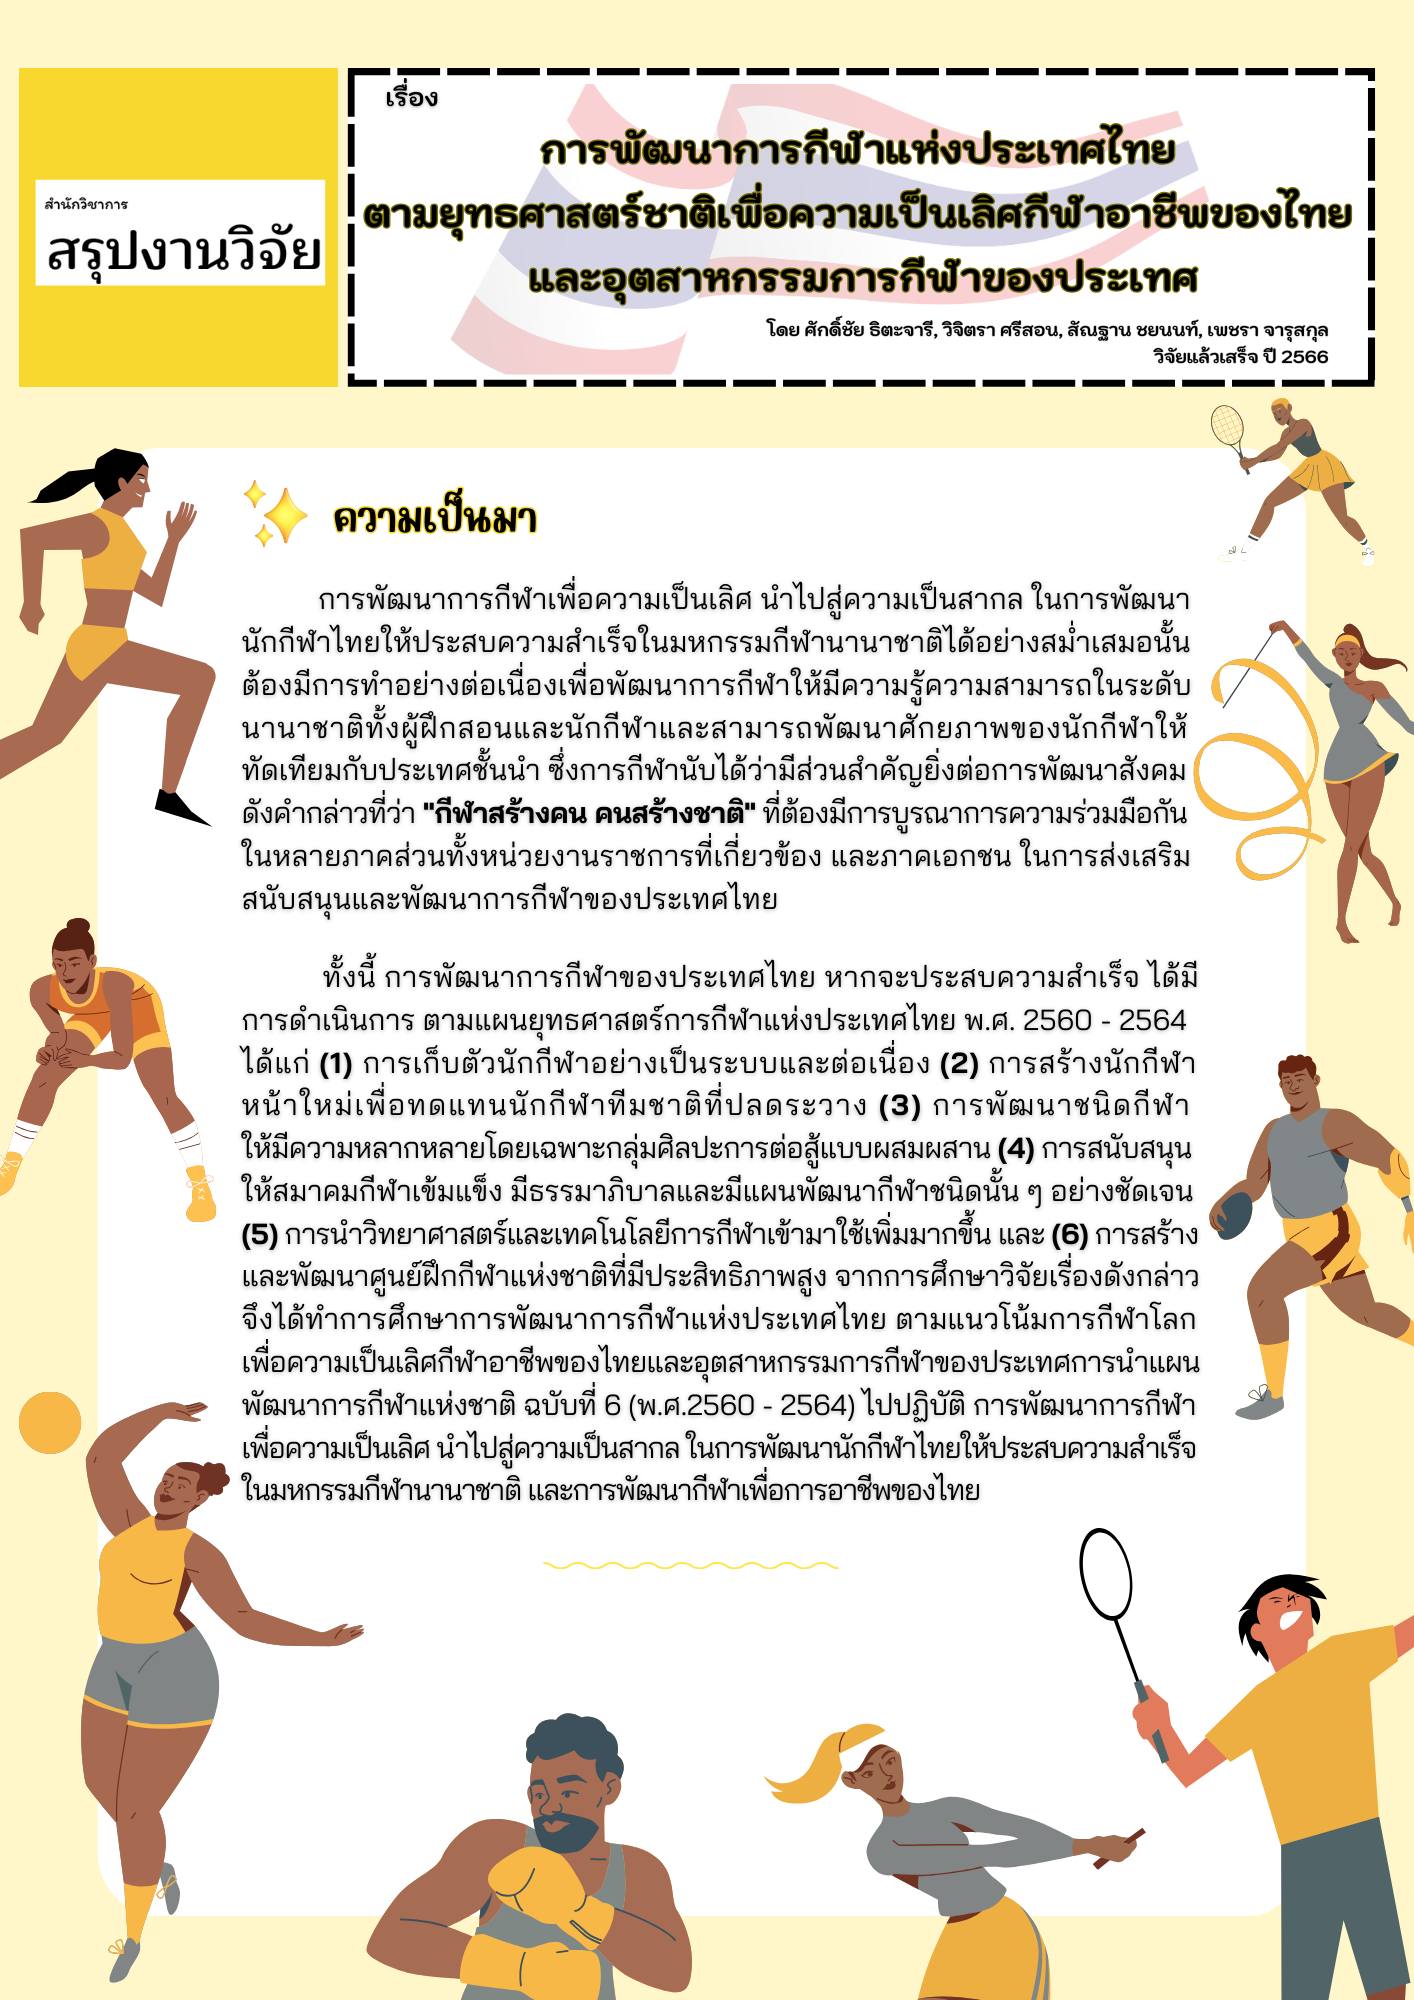 สรุปงานวิจัย   “การพัฒนาการกีฬาแห่งประเทศไทยตามยุทธศาสตร์ชาติ เพื่อความเป็นเลิศกีฬาอาชีพของไทย และอุตสาหกรรมการกีฬาของประเทศ” 